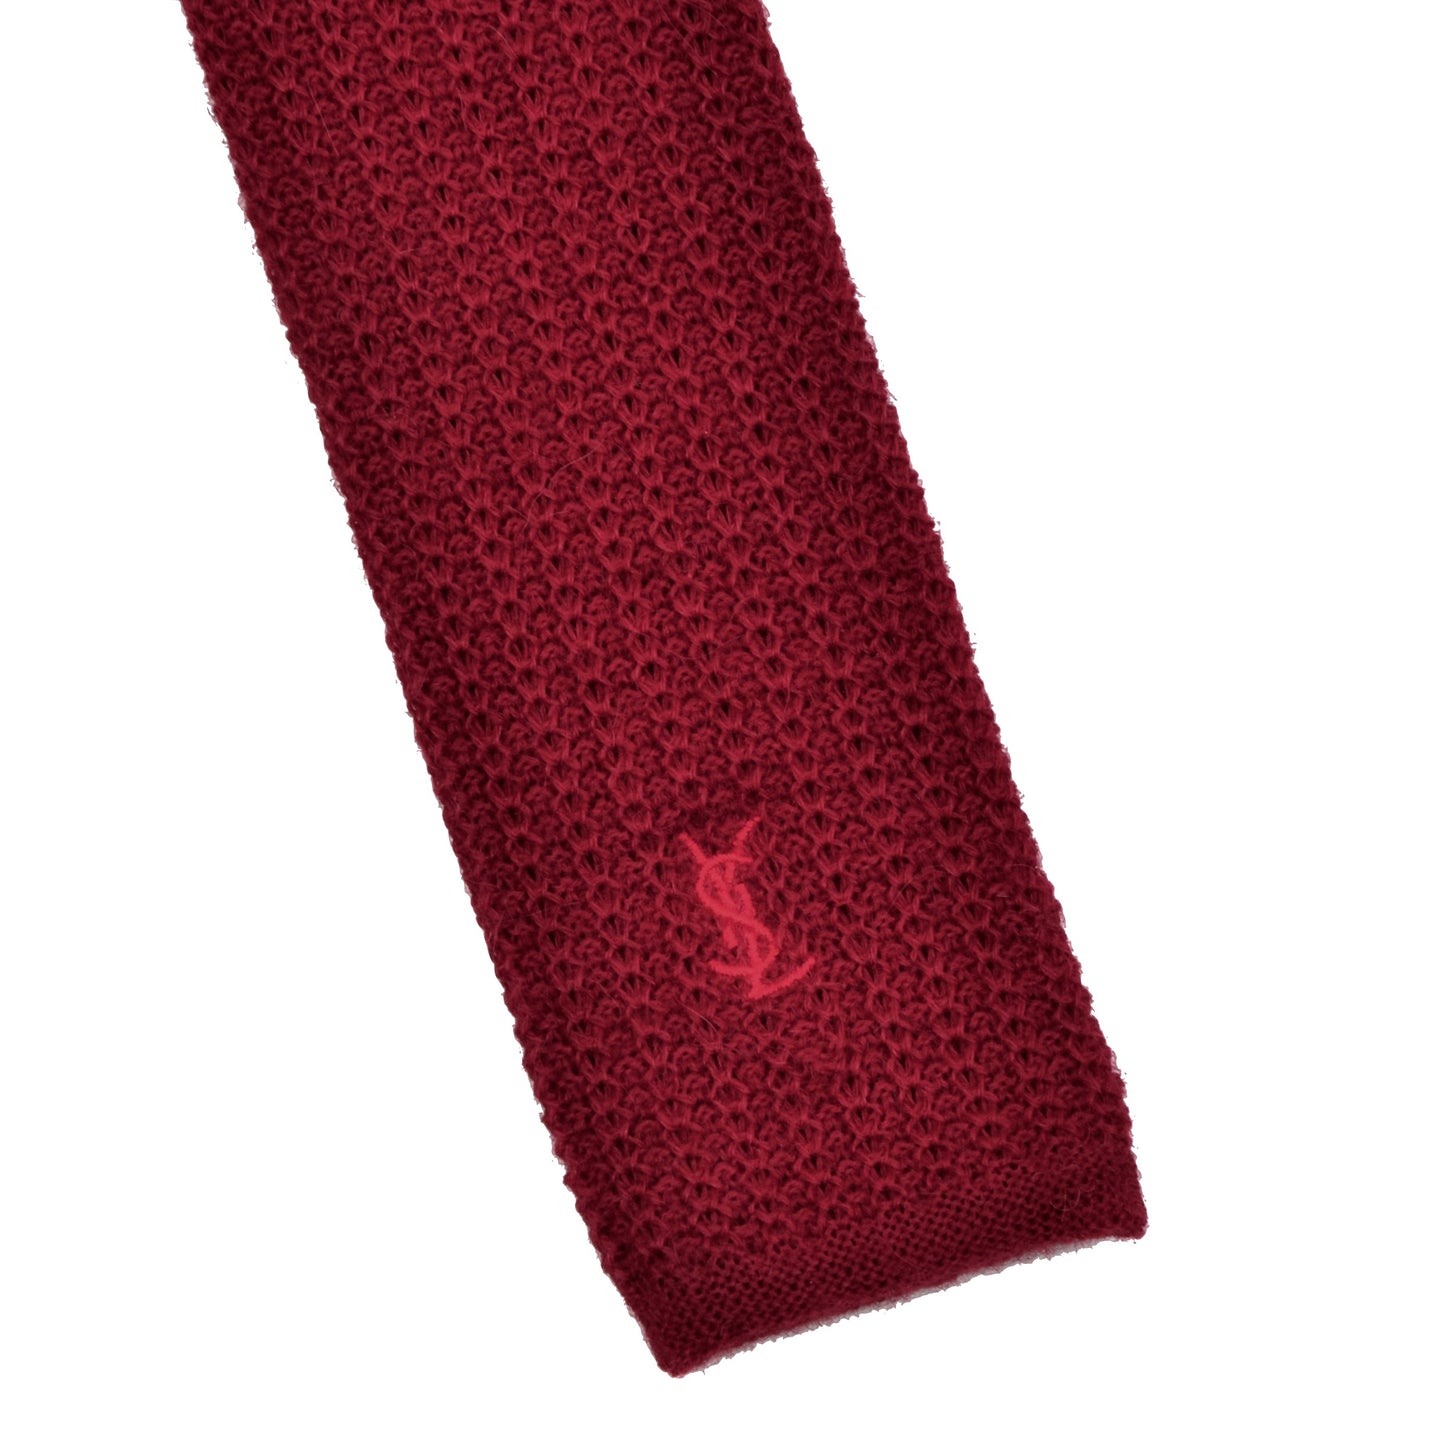 YSL-Krawatte aus gestrickter Wolle und Alapaca - Rot